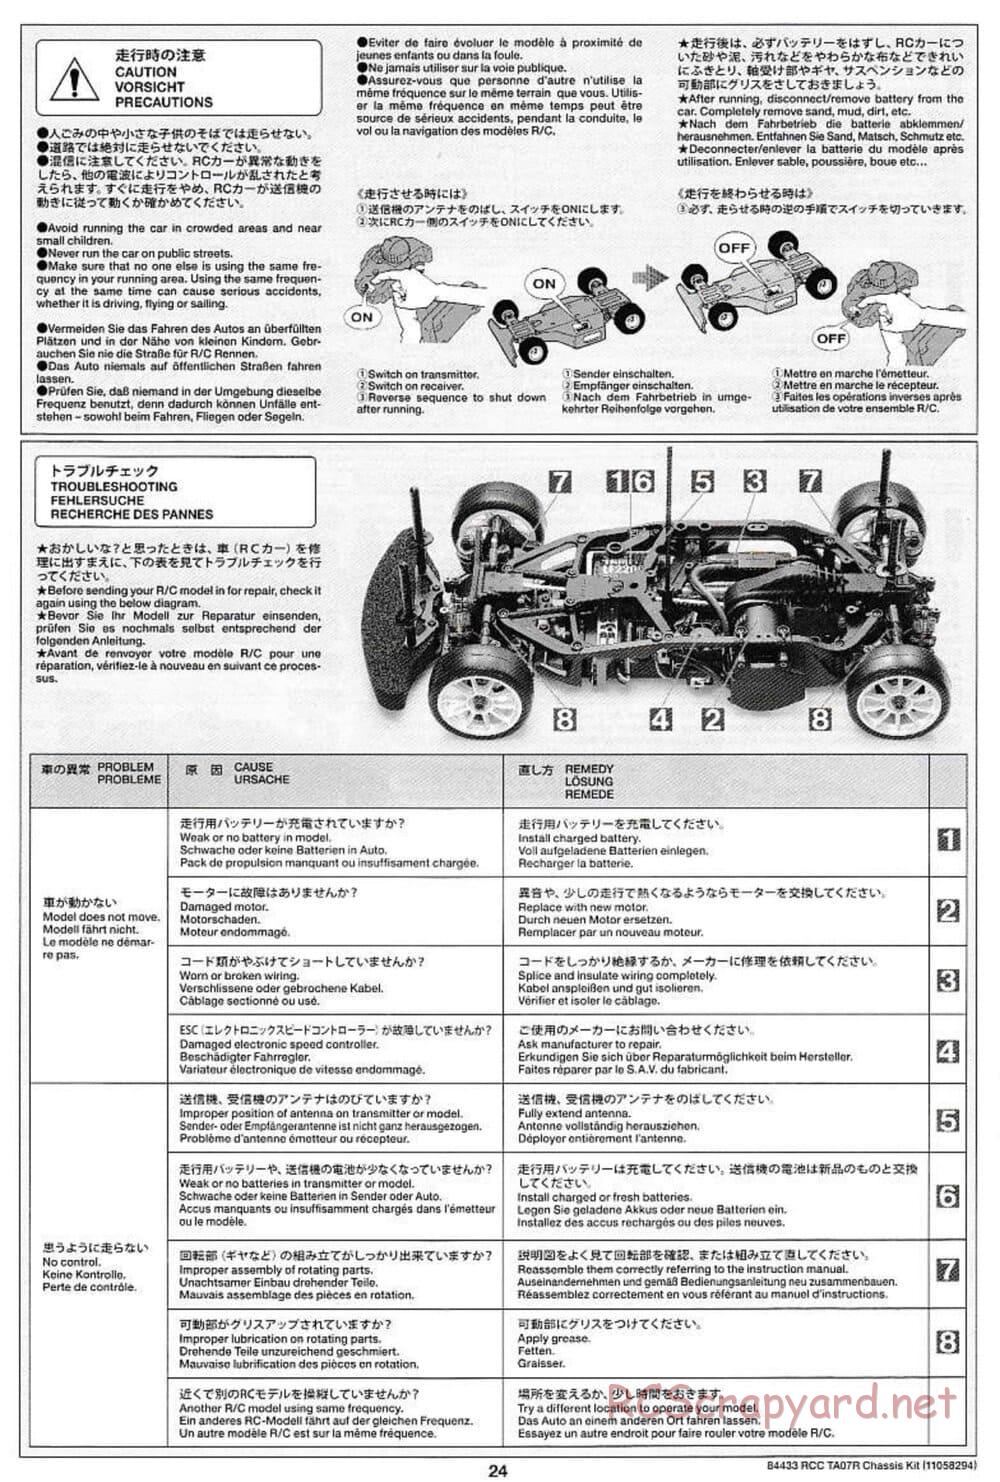 Tamiya - TA07 R Chassis - Manual - Page 24